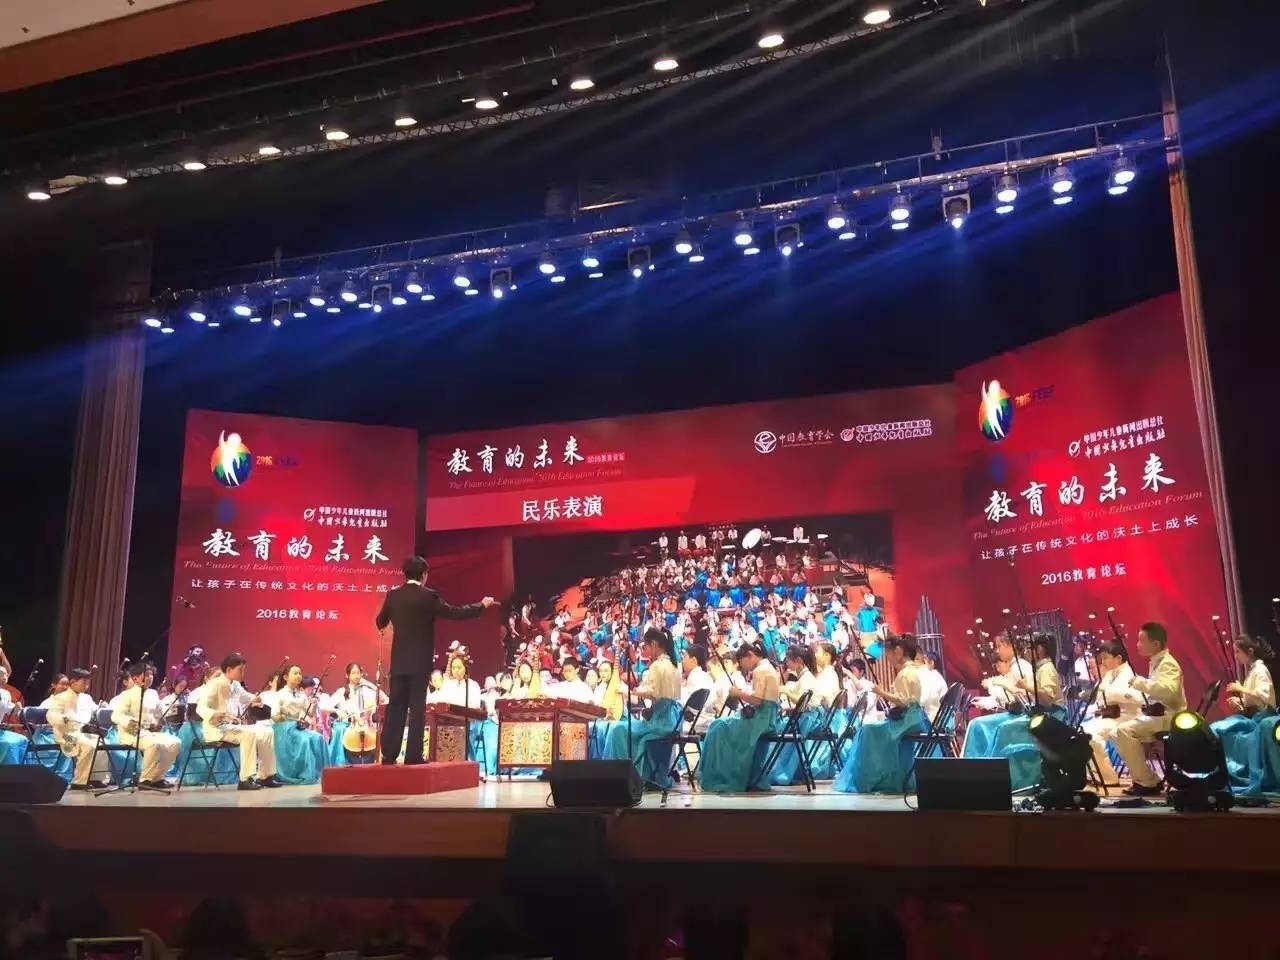 中央民族乐团首次在宝鸡音乐厅为宝鸡观众呈现国乐盛宴-西部之声